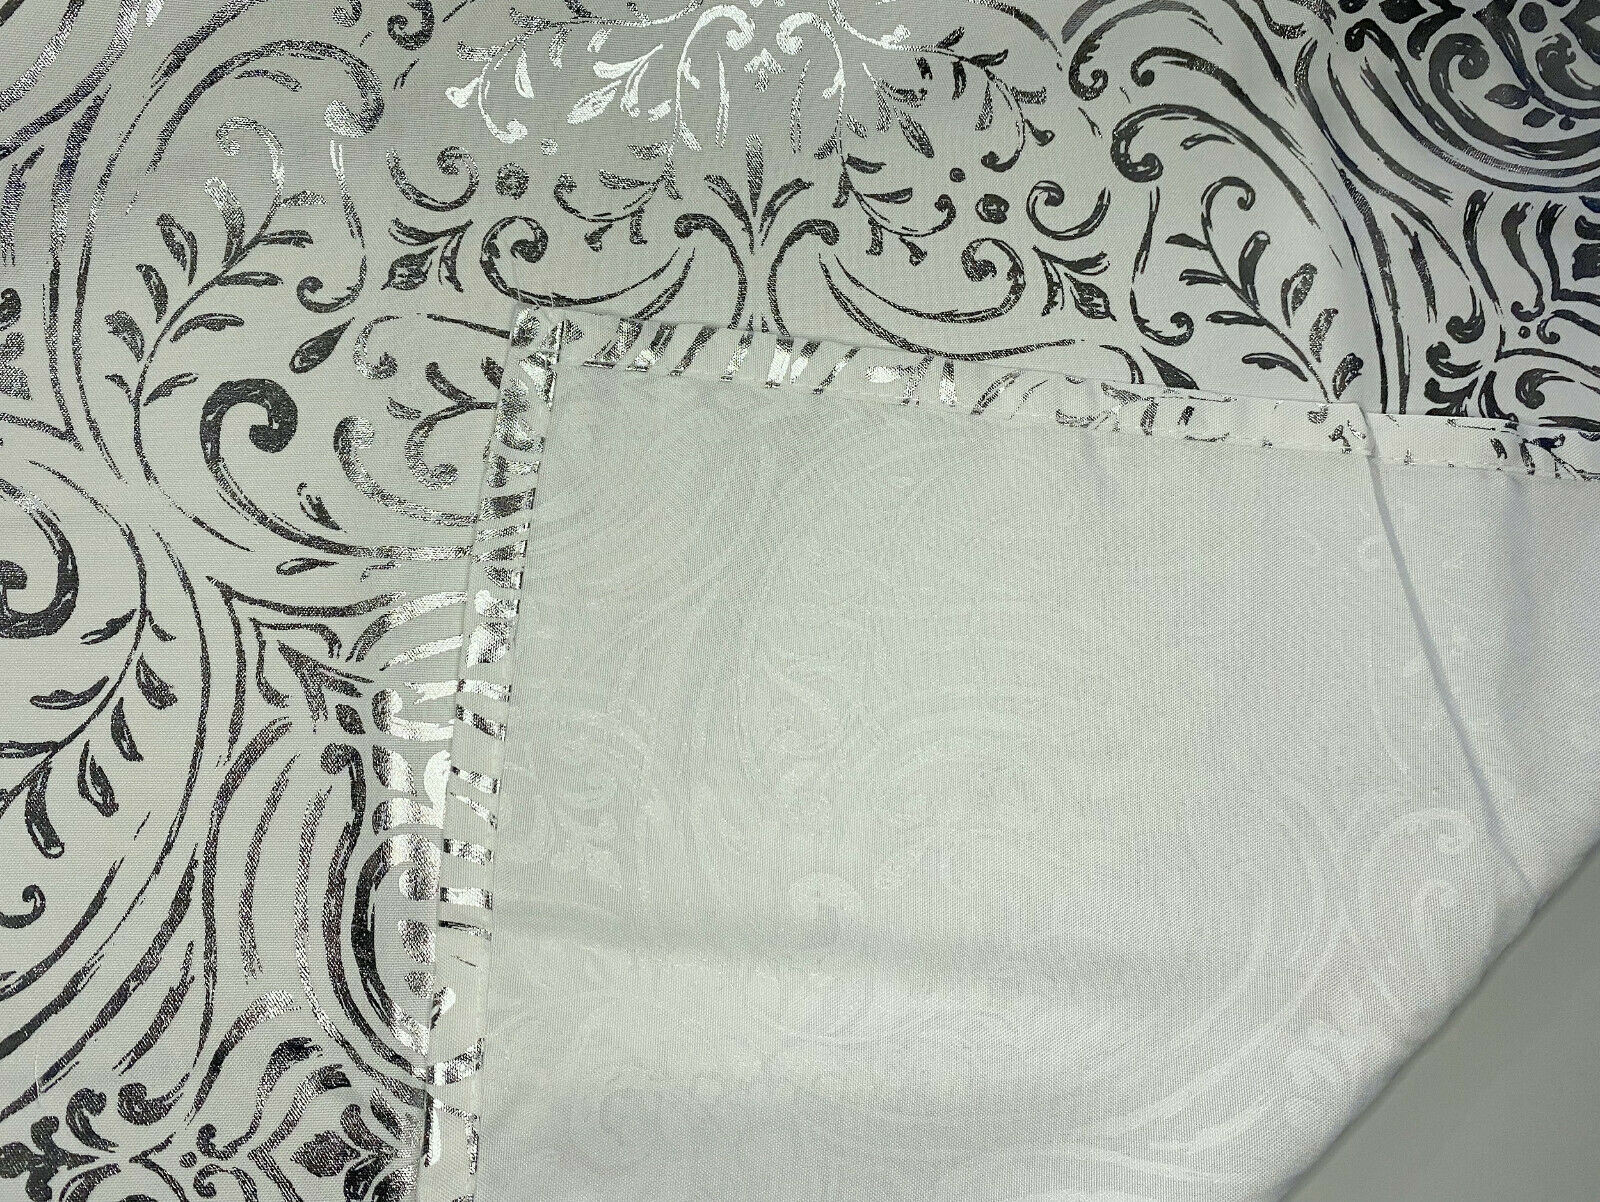 Ösenschal Maya weiß silber BxH 135x245cm